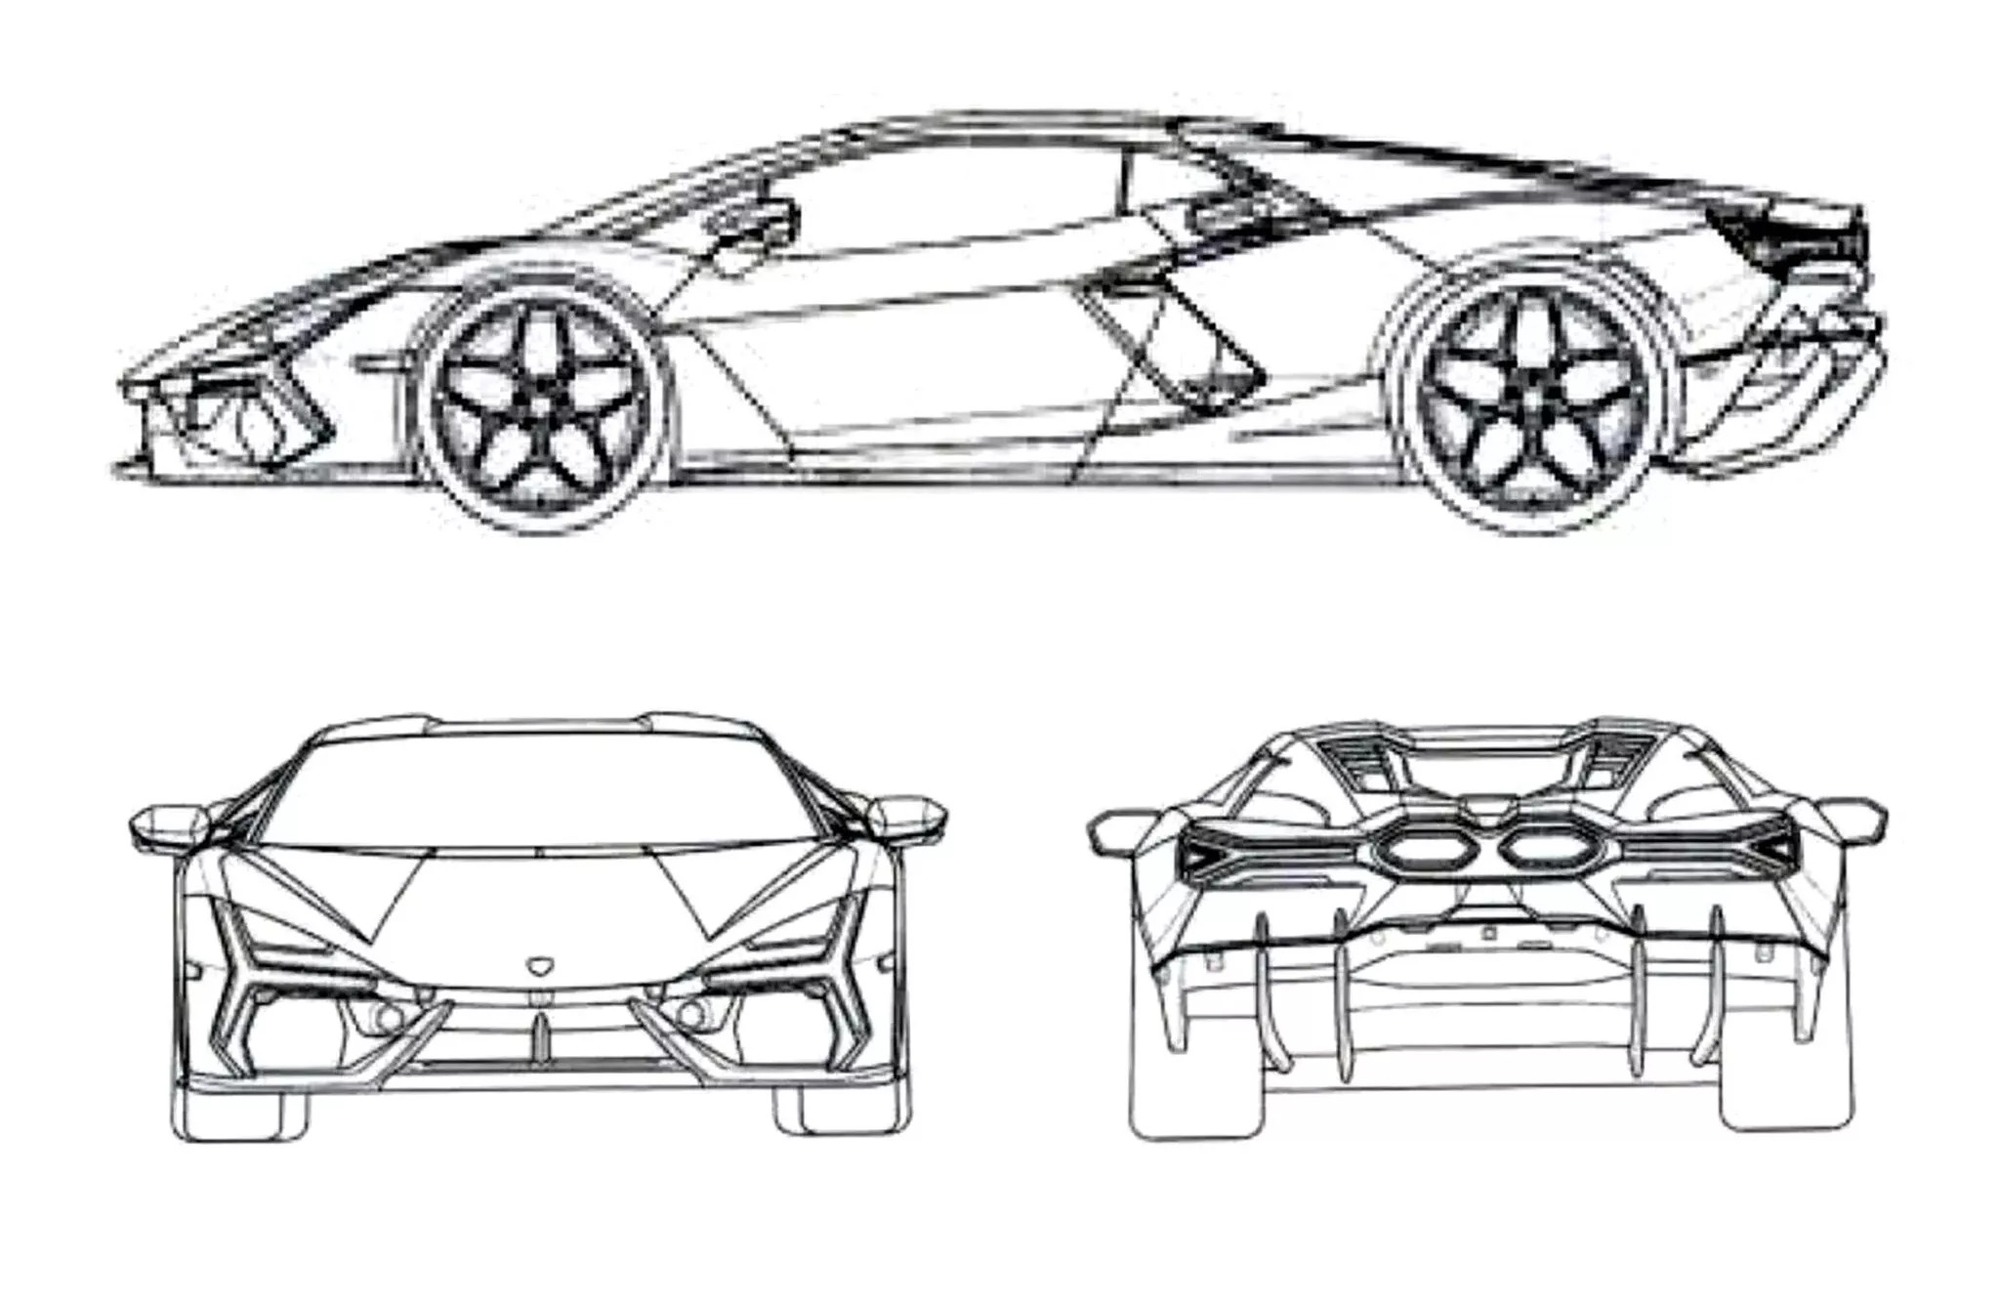 Thiết kế Lamborghini chắc cũng nhàn: Đàn em Aventador lộ diện mạo với nhiều chi tiết giống siêu xe nửa thập kỷ trước - Ảnh 5.